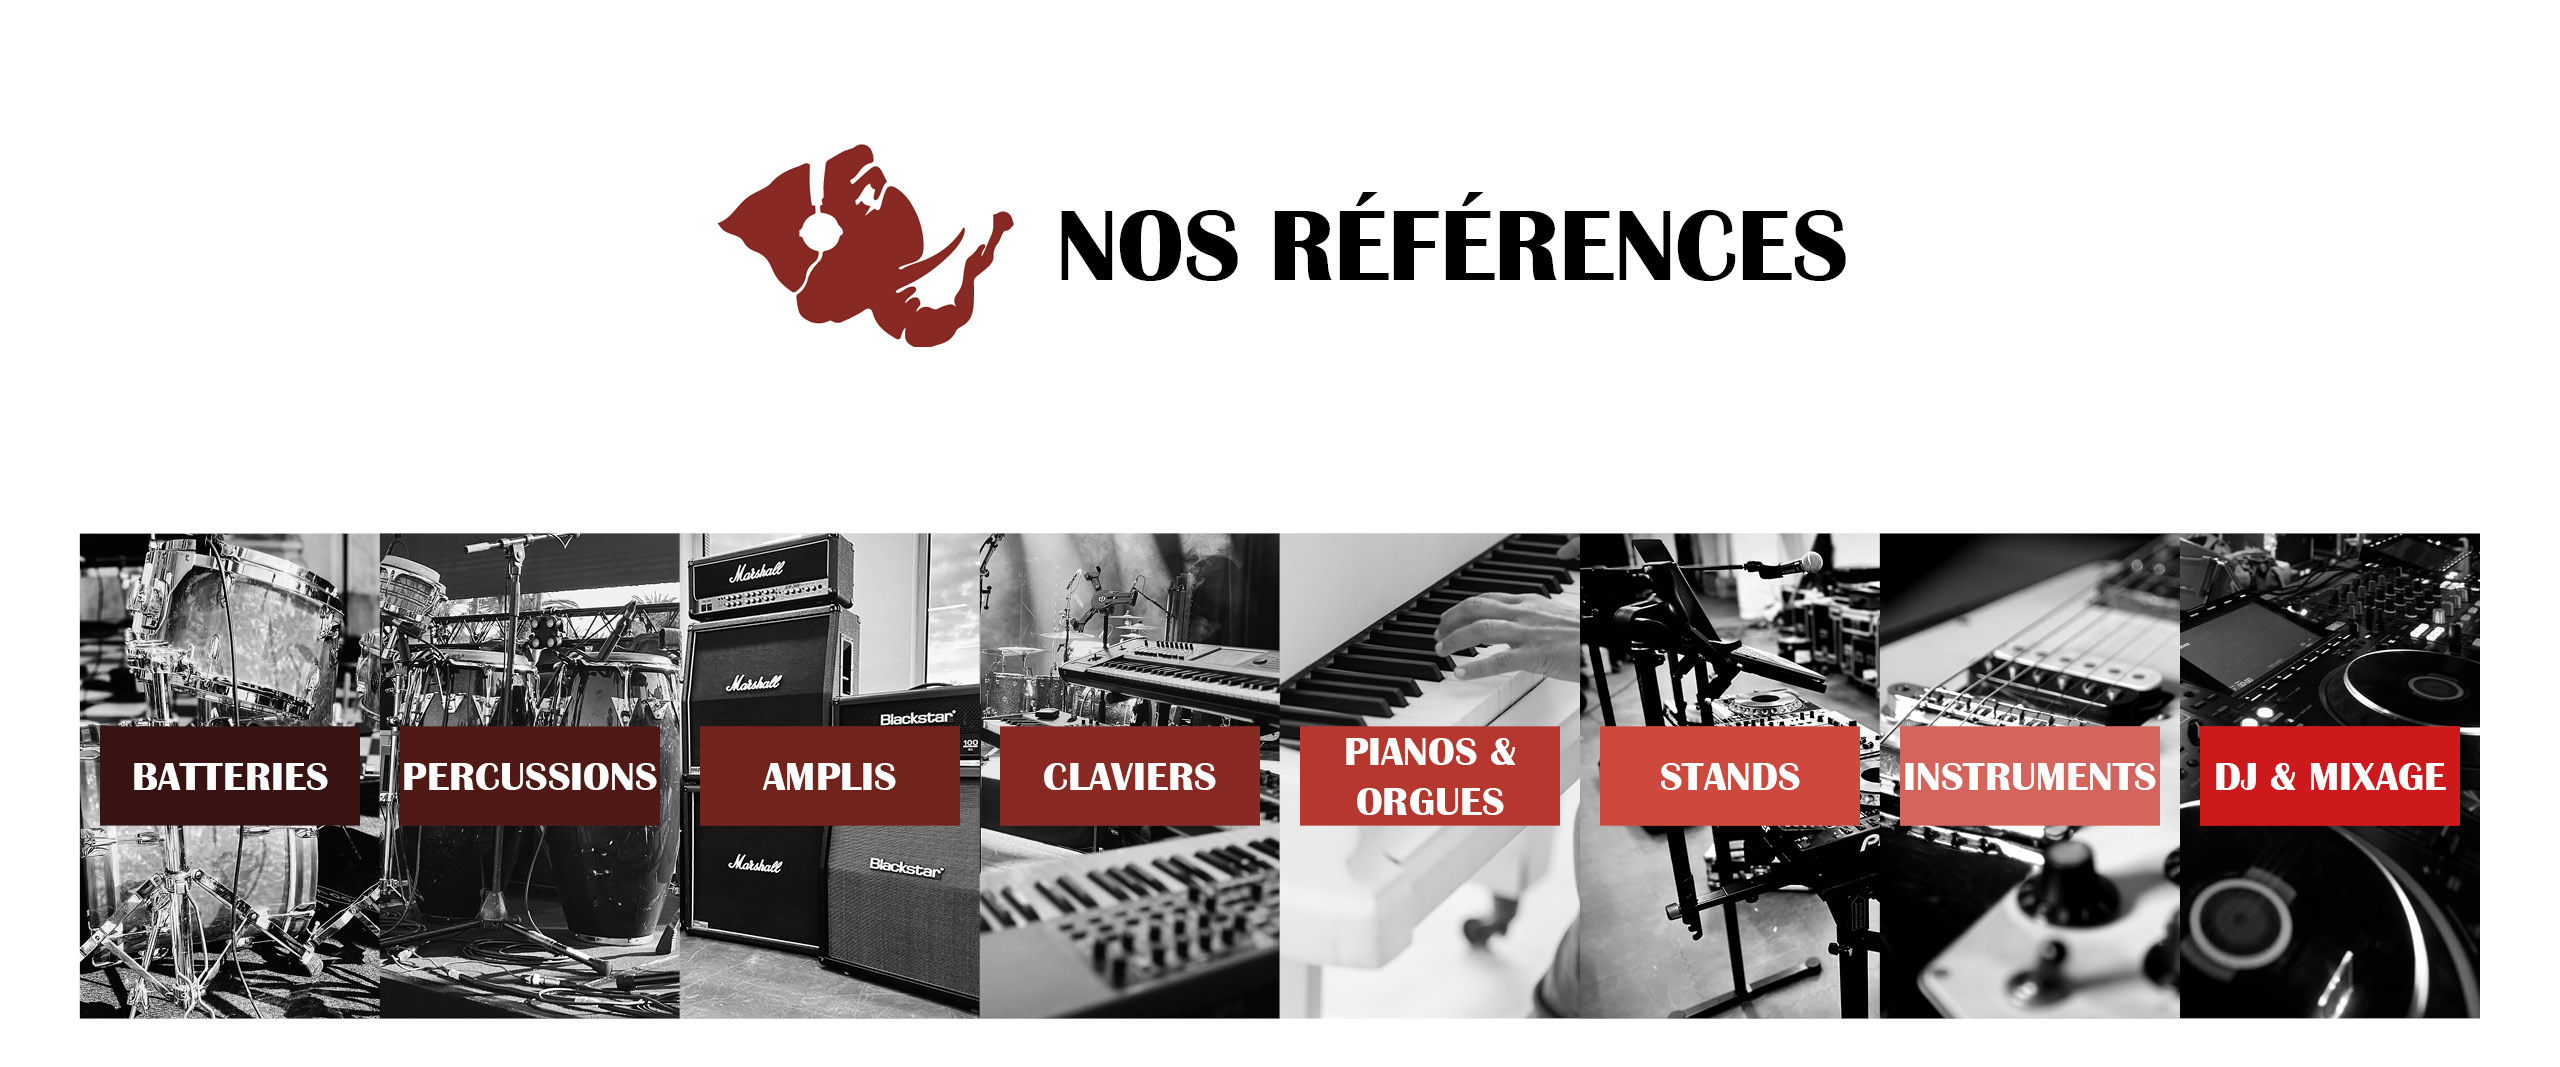 Nos références Backline Batteries - Percussions - Amplis - Claviers - Painos et Orgues - Stands - Instruments - DJ et Mixage